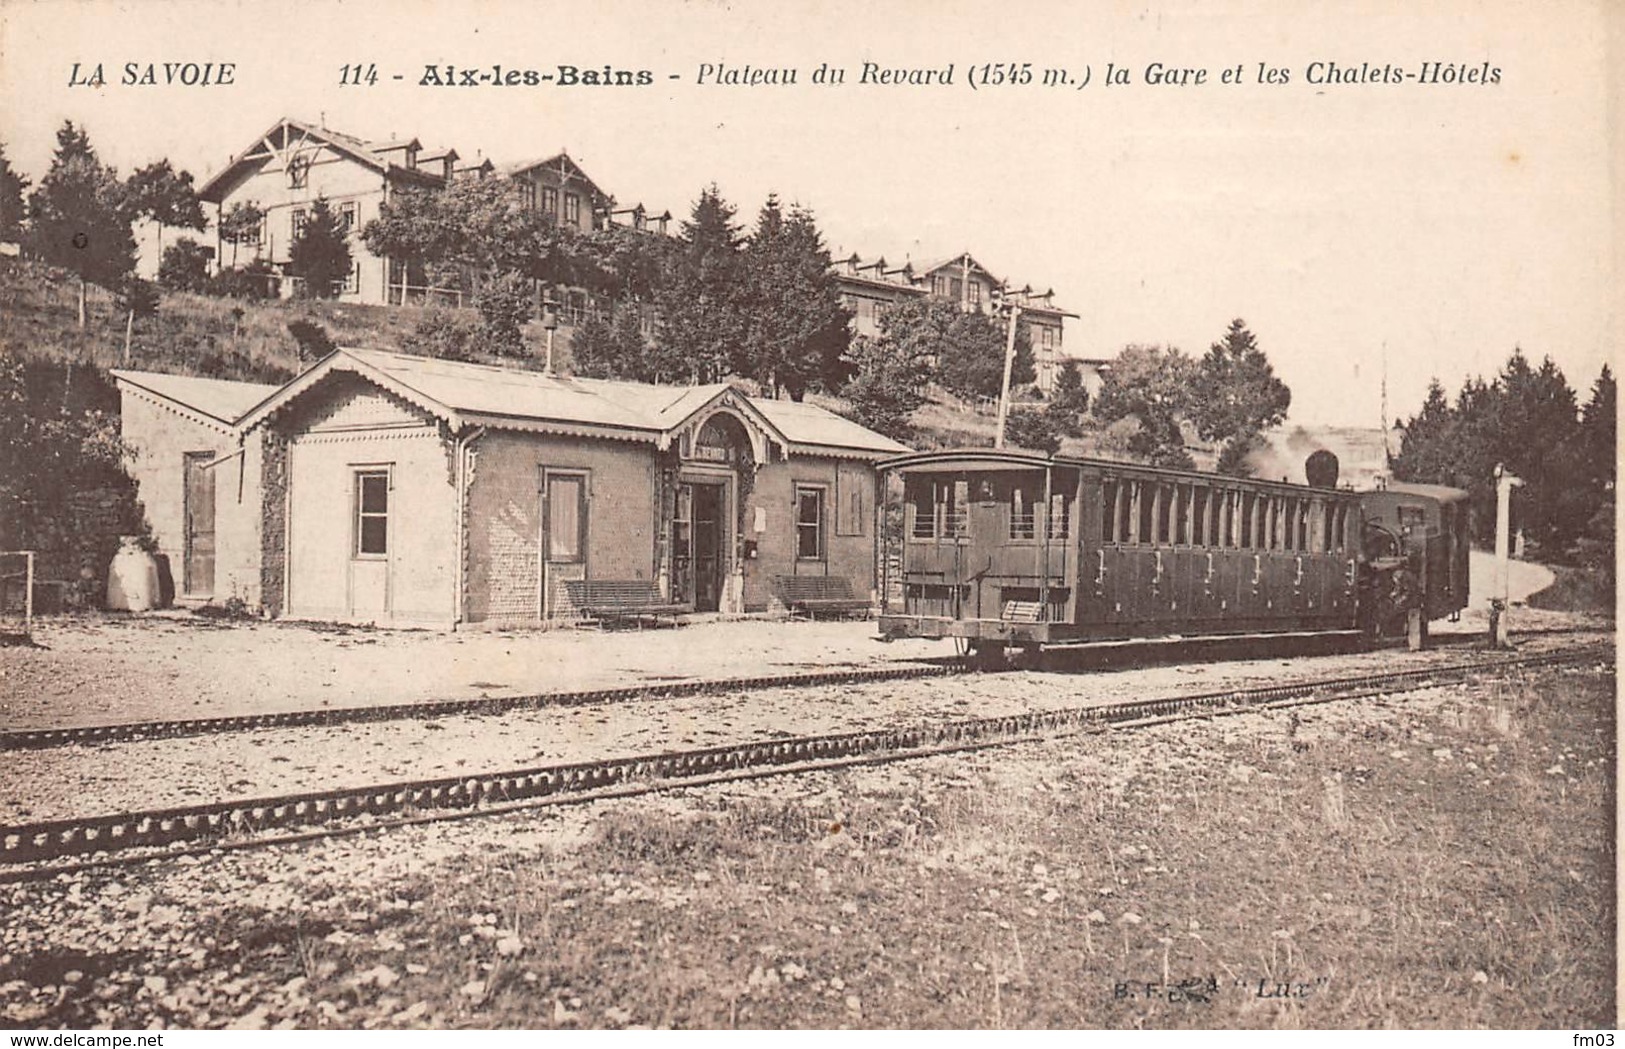 Aix Les Bains Plateau Du Revard Gare Train BF 114 Publicité Chirurgie Santé Perrier Biesles Canton Nogent - Aix Les Bains